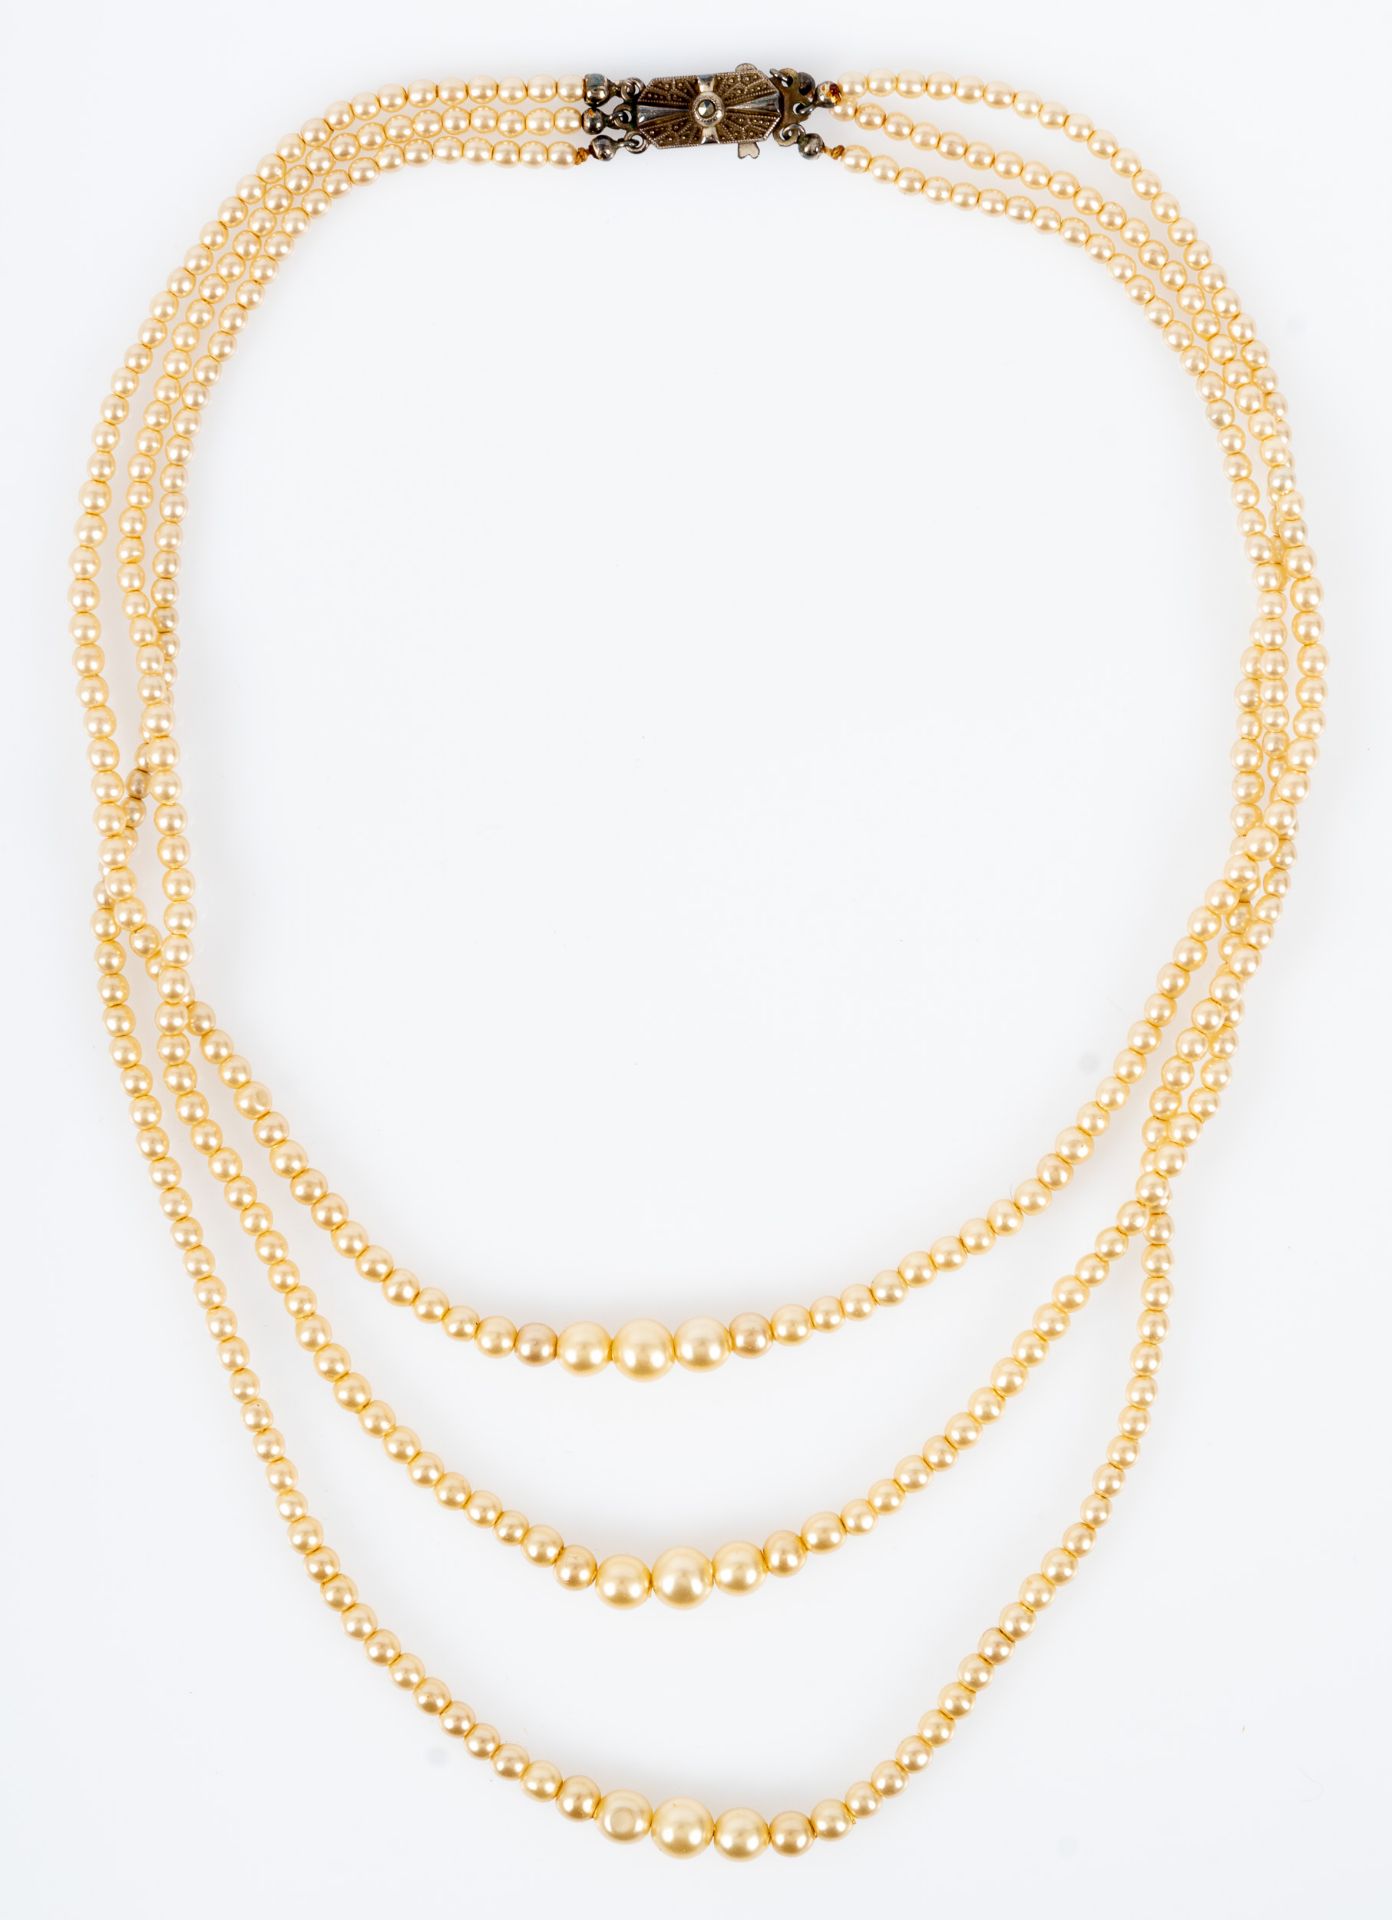 3reihiges, antikes Perlencollier/3reihige Perlenkette um 1900/20, im Verlauf größer/kleiner werdend